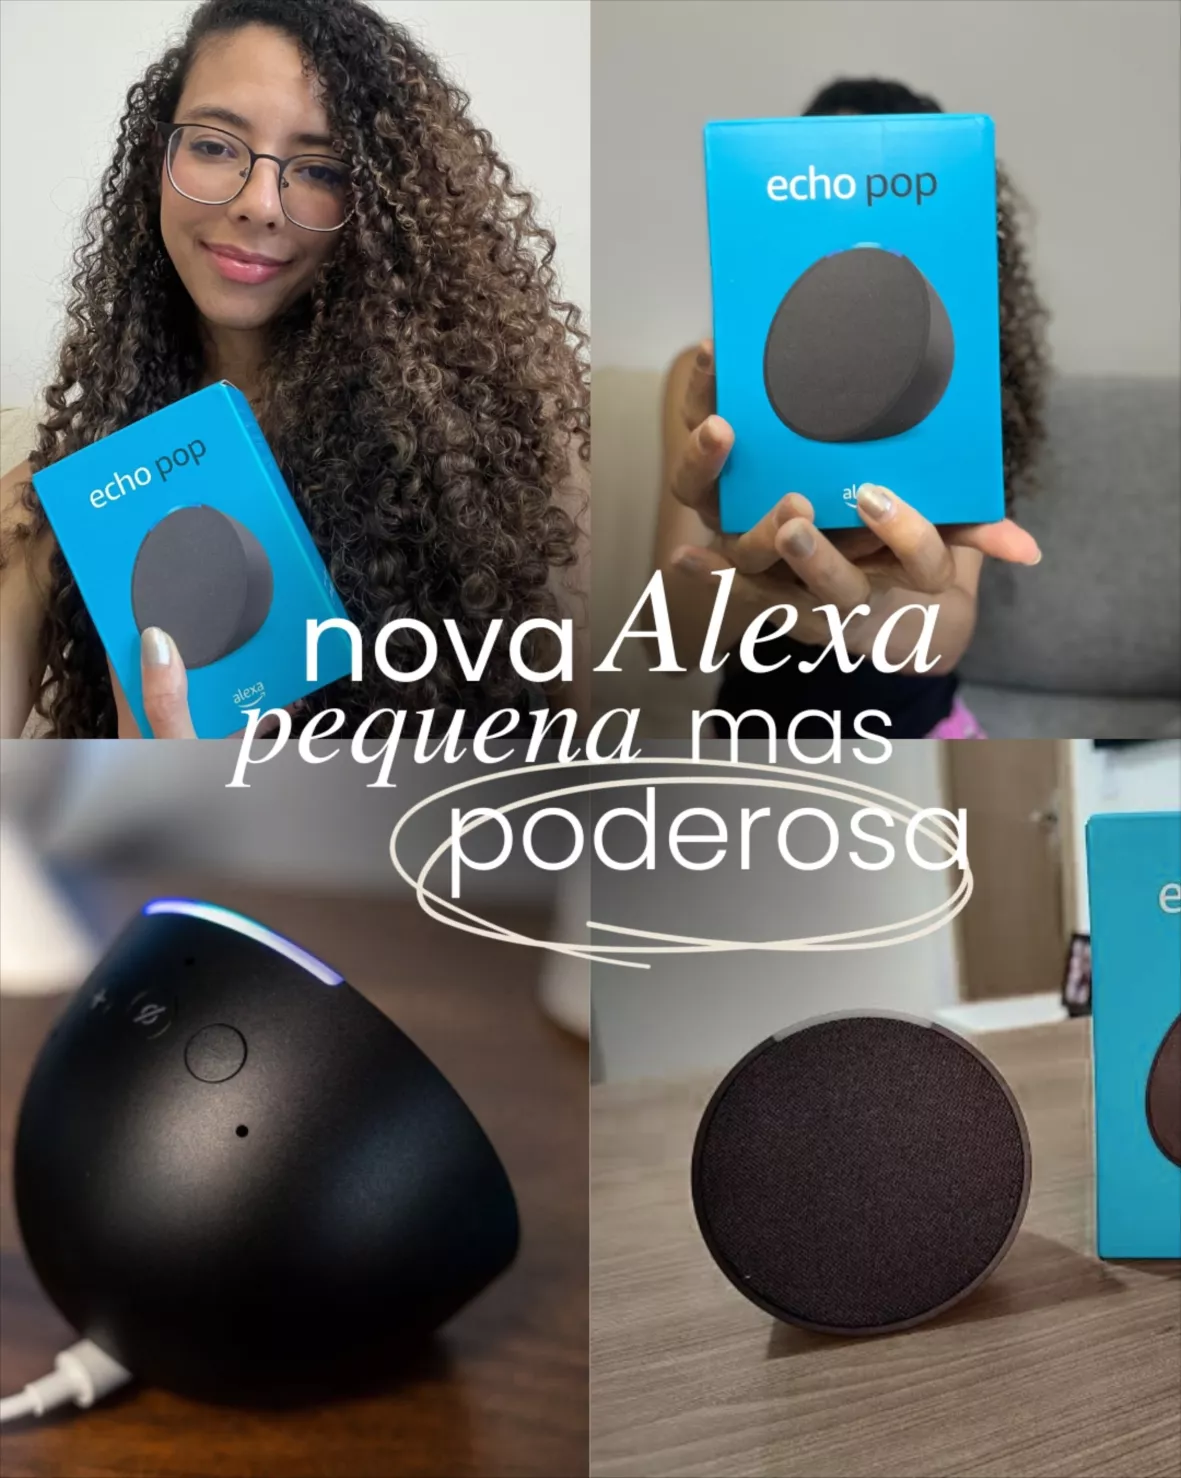 Oferta de Natal : ótimo desconto no Echo Pop com Alexa